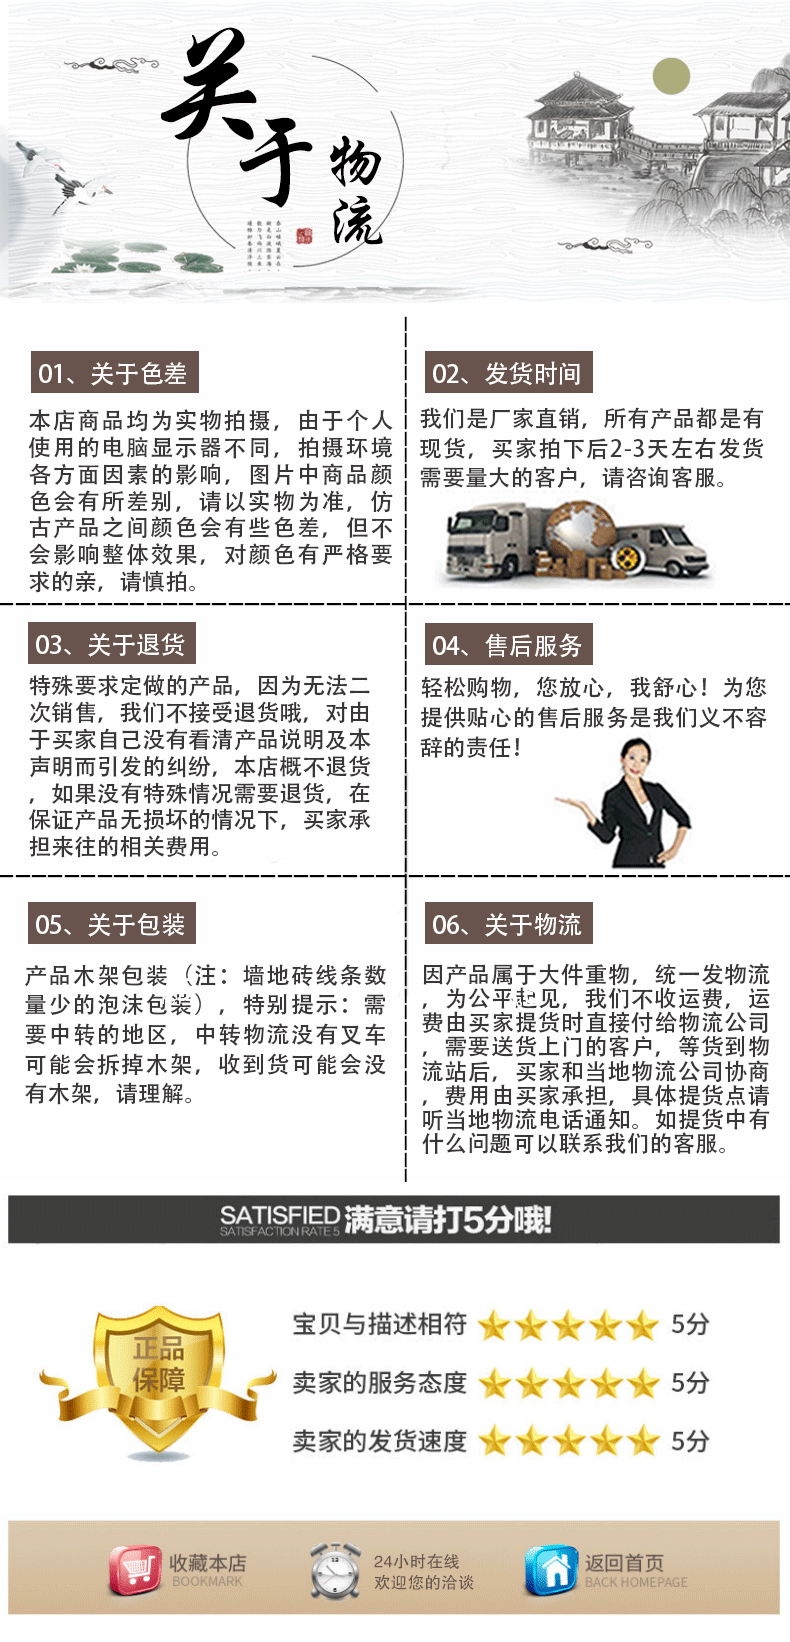 Xiangqing Page 3_04.